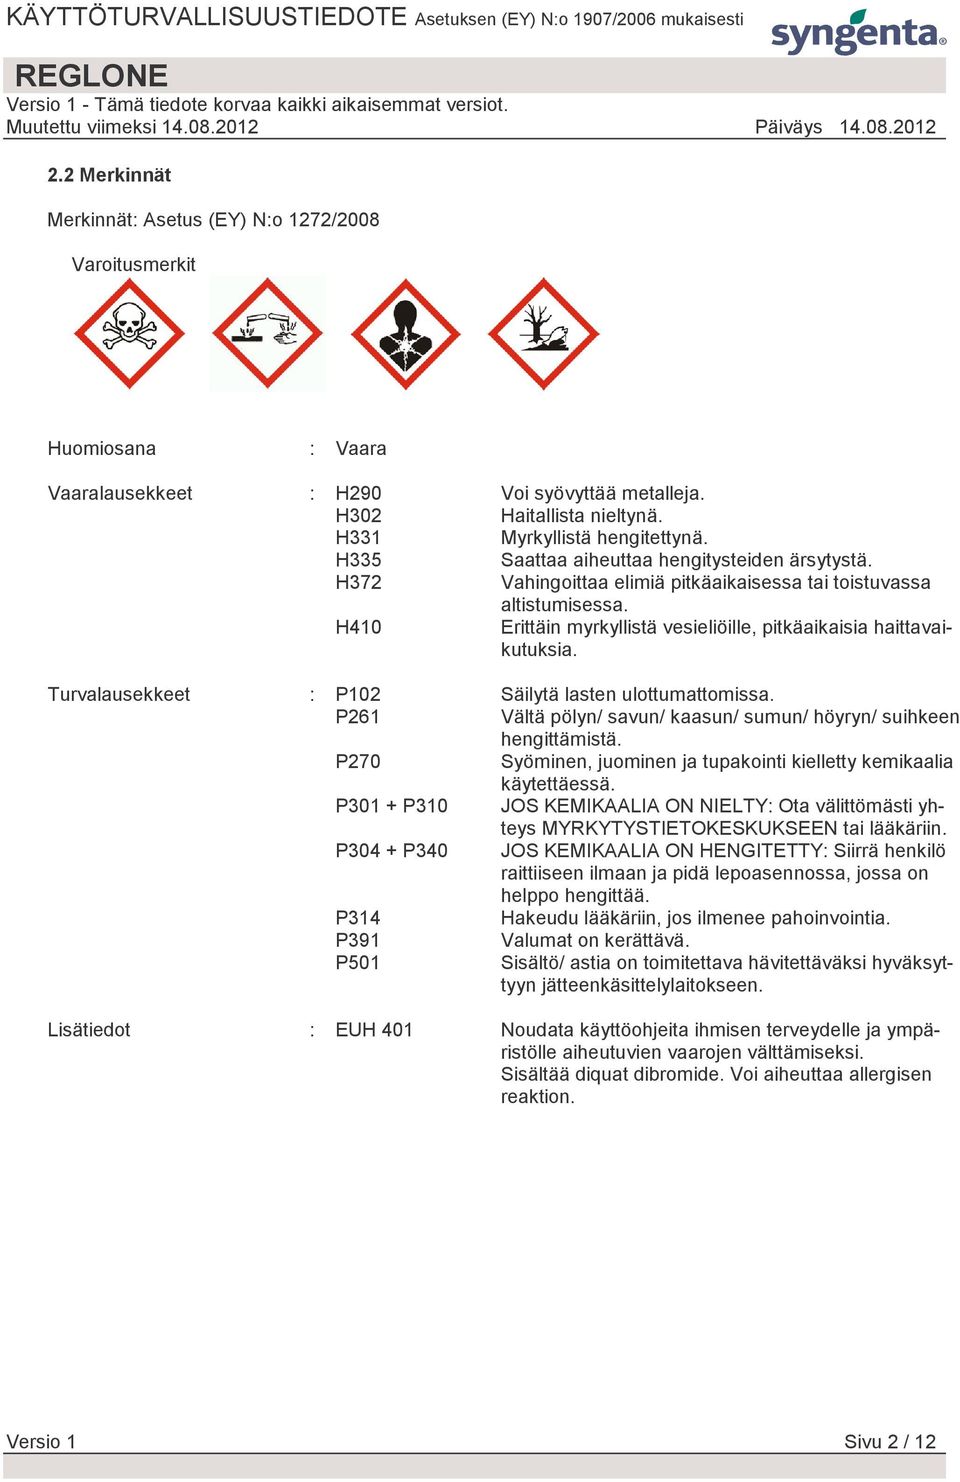 Turvalausekkeet : P102 Säilytä lasten ulottumattomissa. P261 Vältä pölyn/ savun/ kaasun/ sumun/ höyryn/ suihkeen hengittämistä. P270 Syöminen, juominen ja tupakointi kielletty kemikaalia käytettäessä.